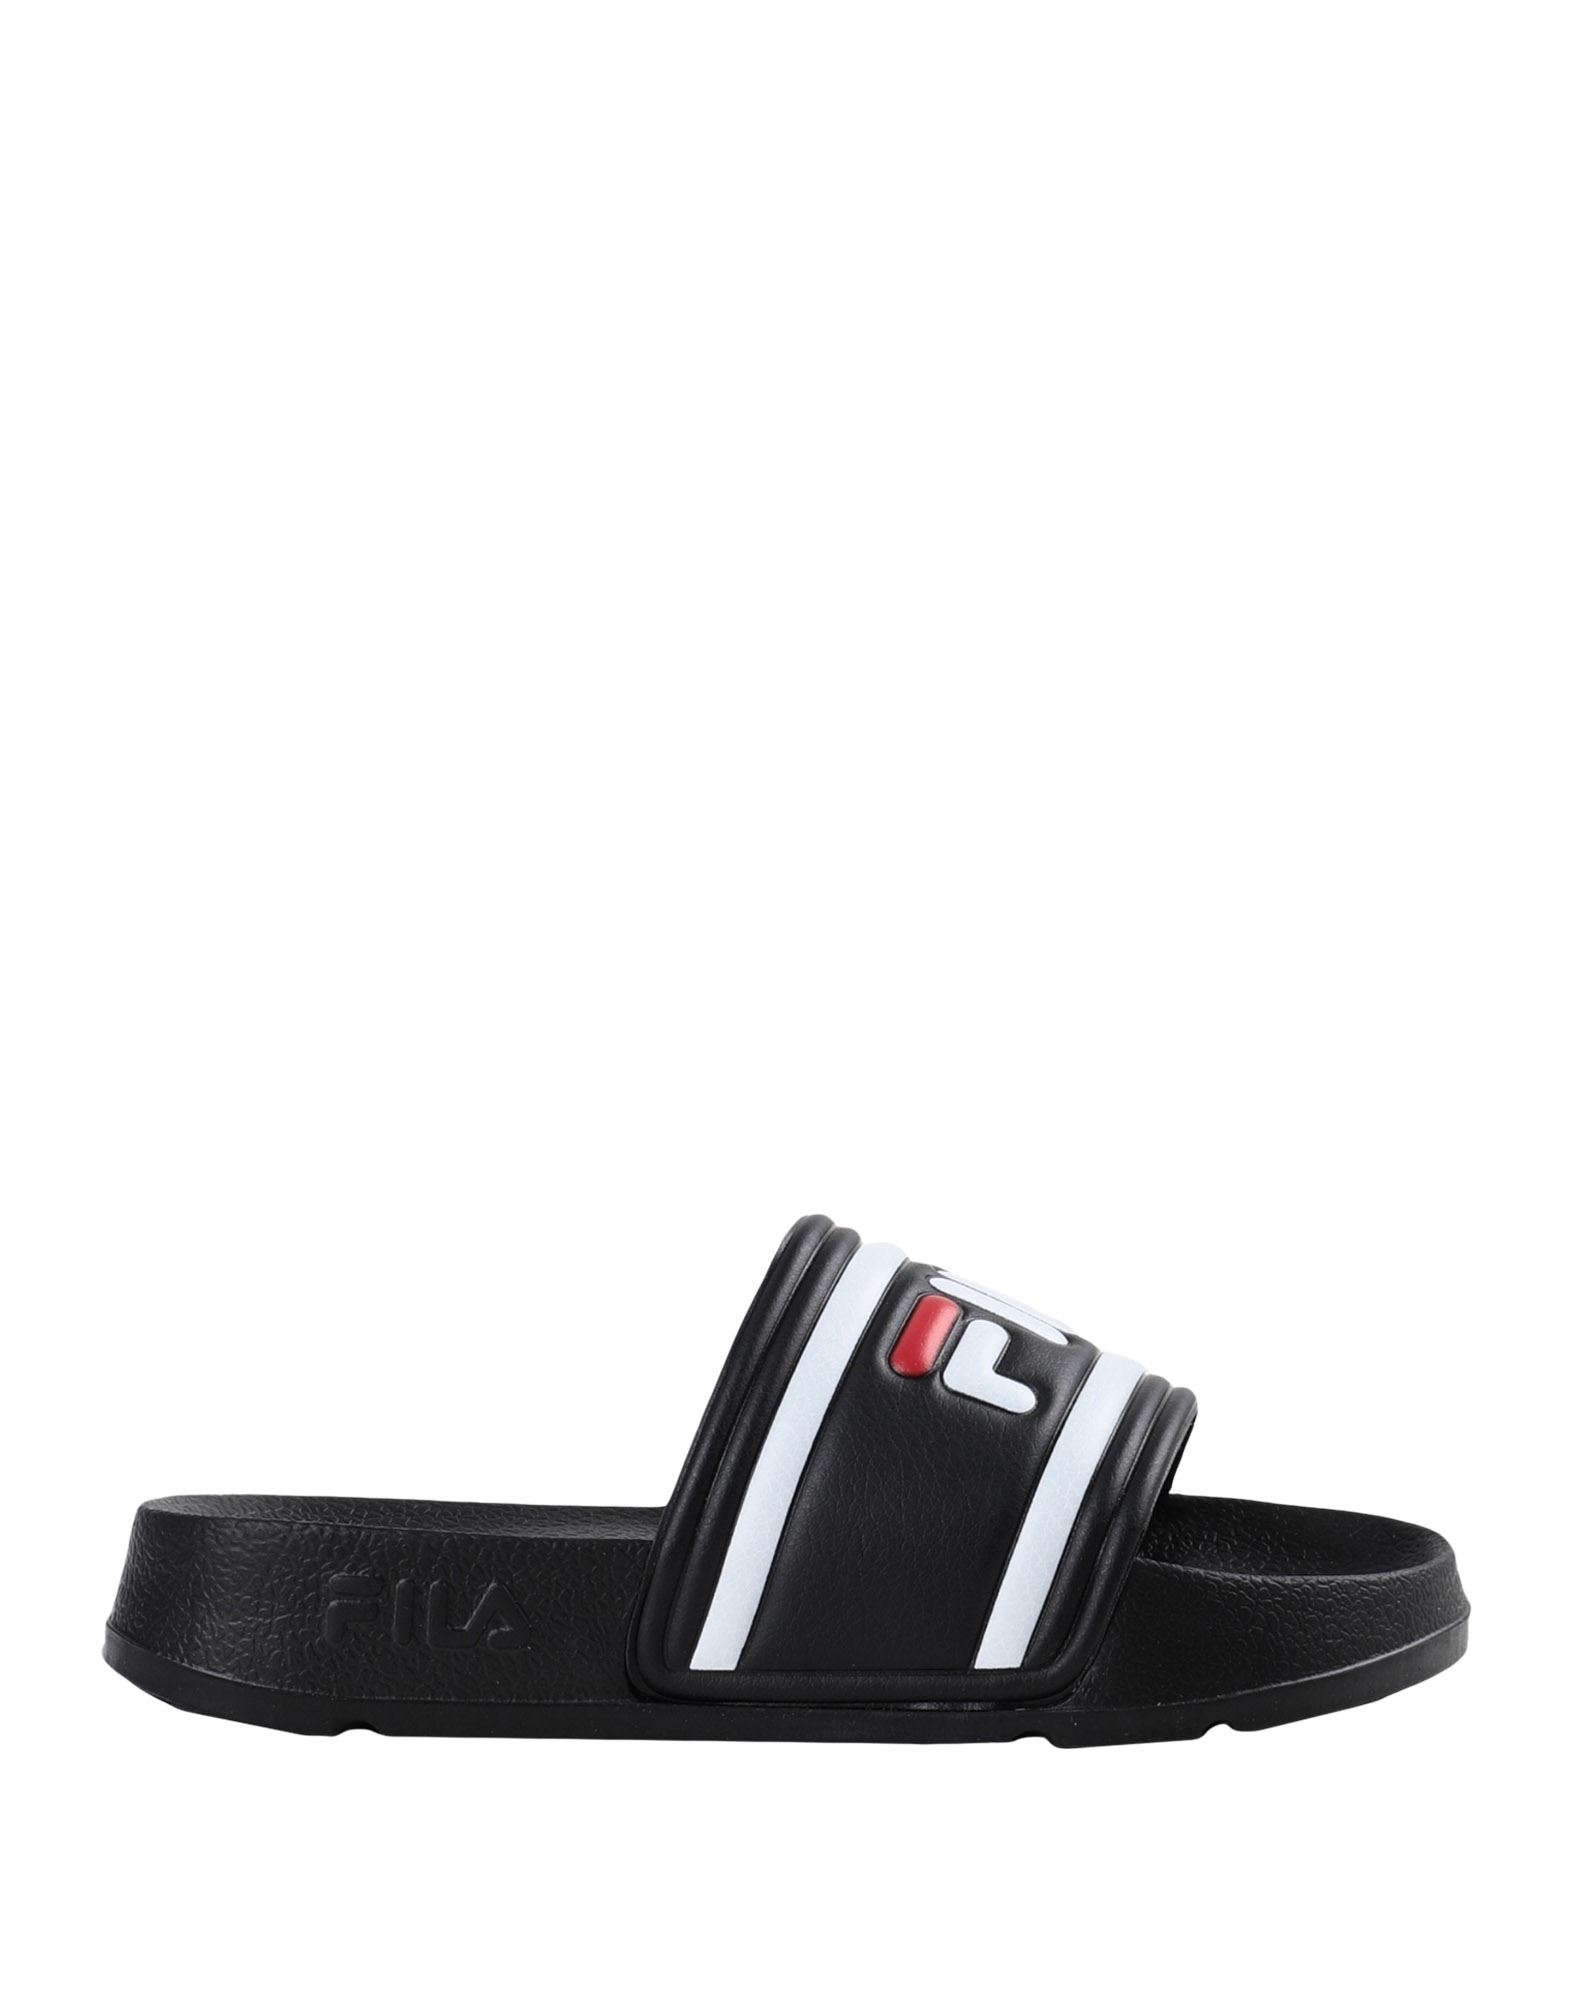 Fila Men's Sleek Slide Sandals From Finish Line In Navy/white/red ...